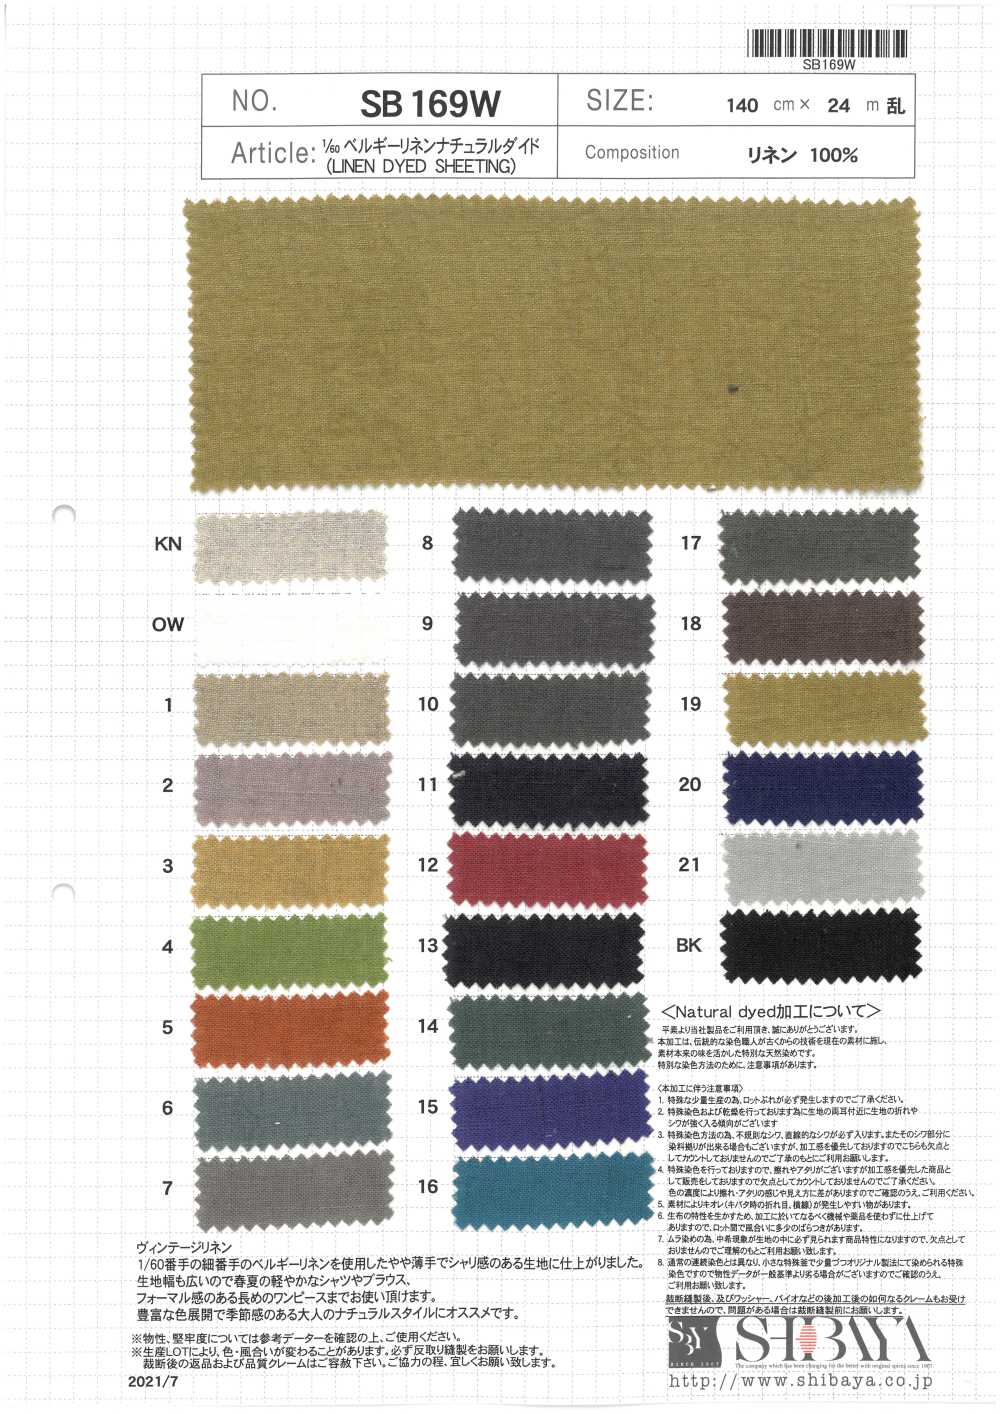 SB169W 1/60 Belgisches Leinen Naturfärbung[Textilgewebe] SHIBAYA